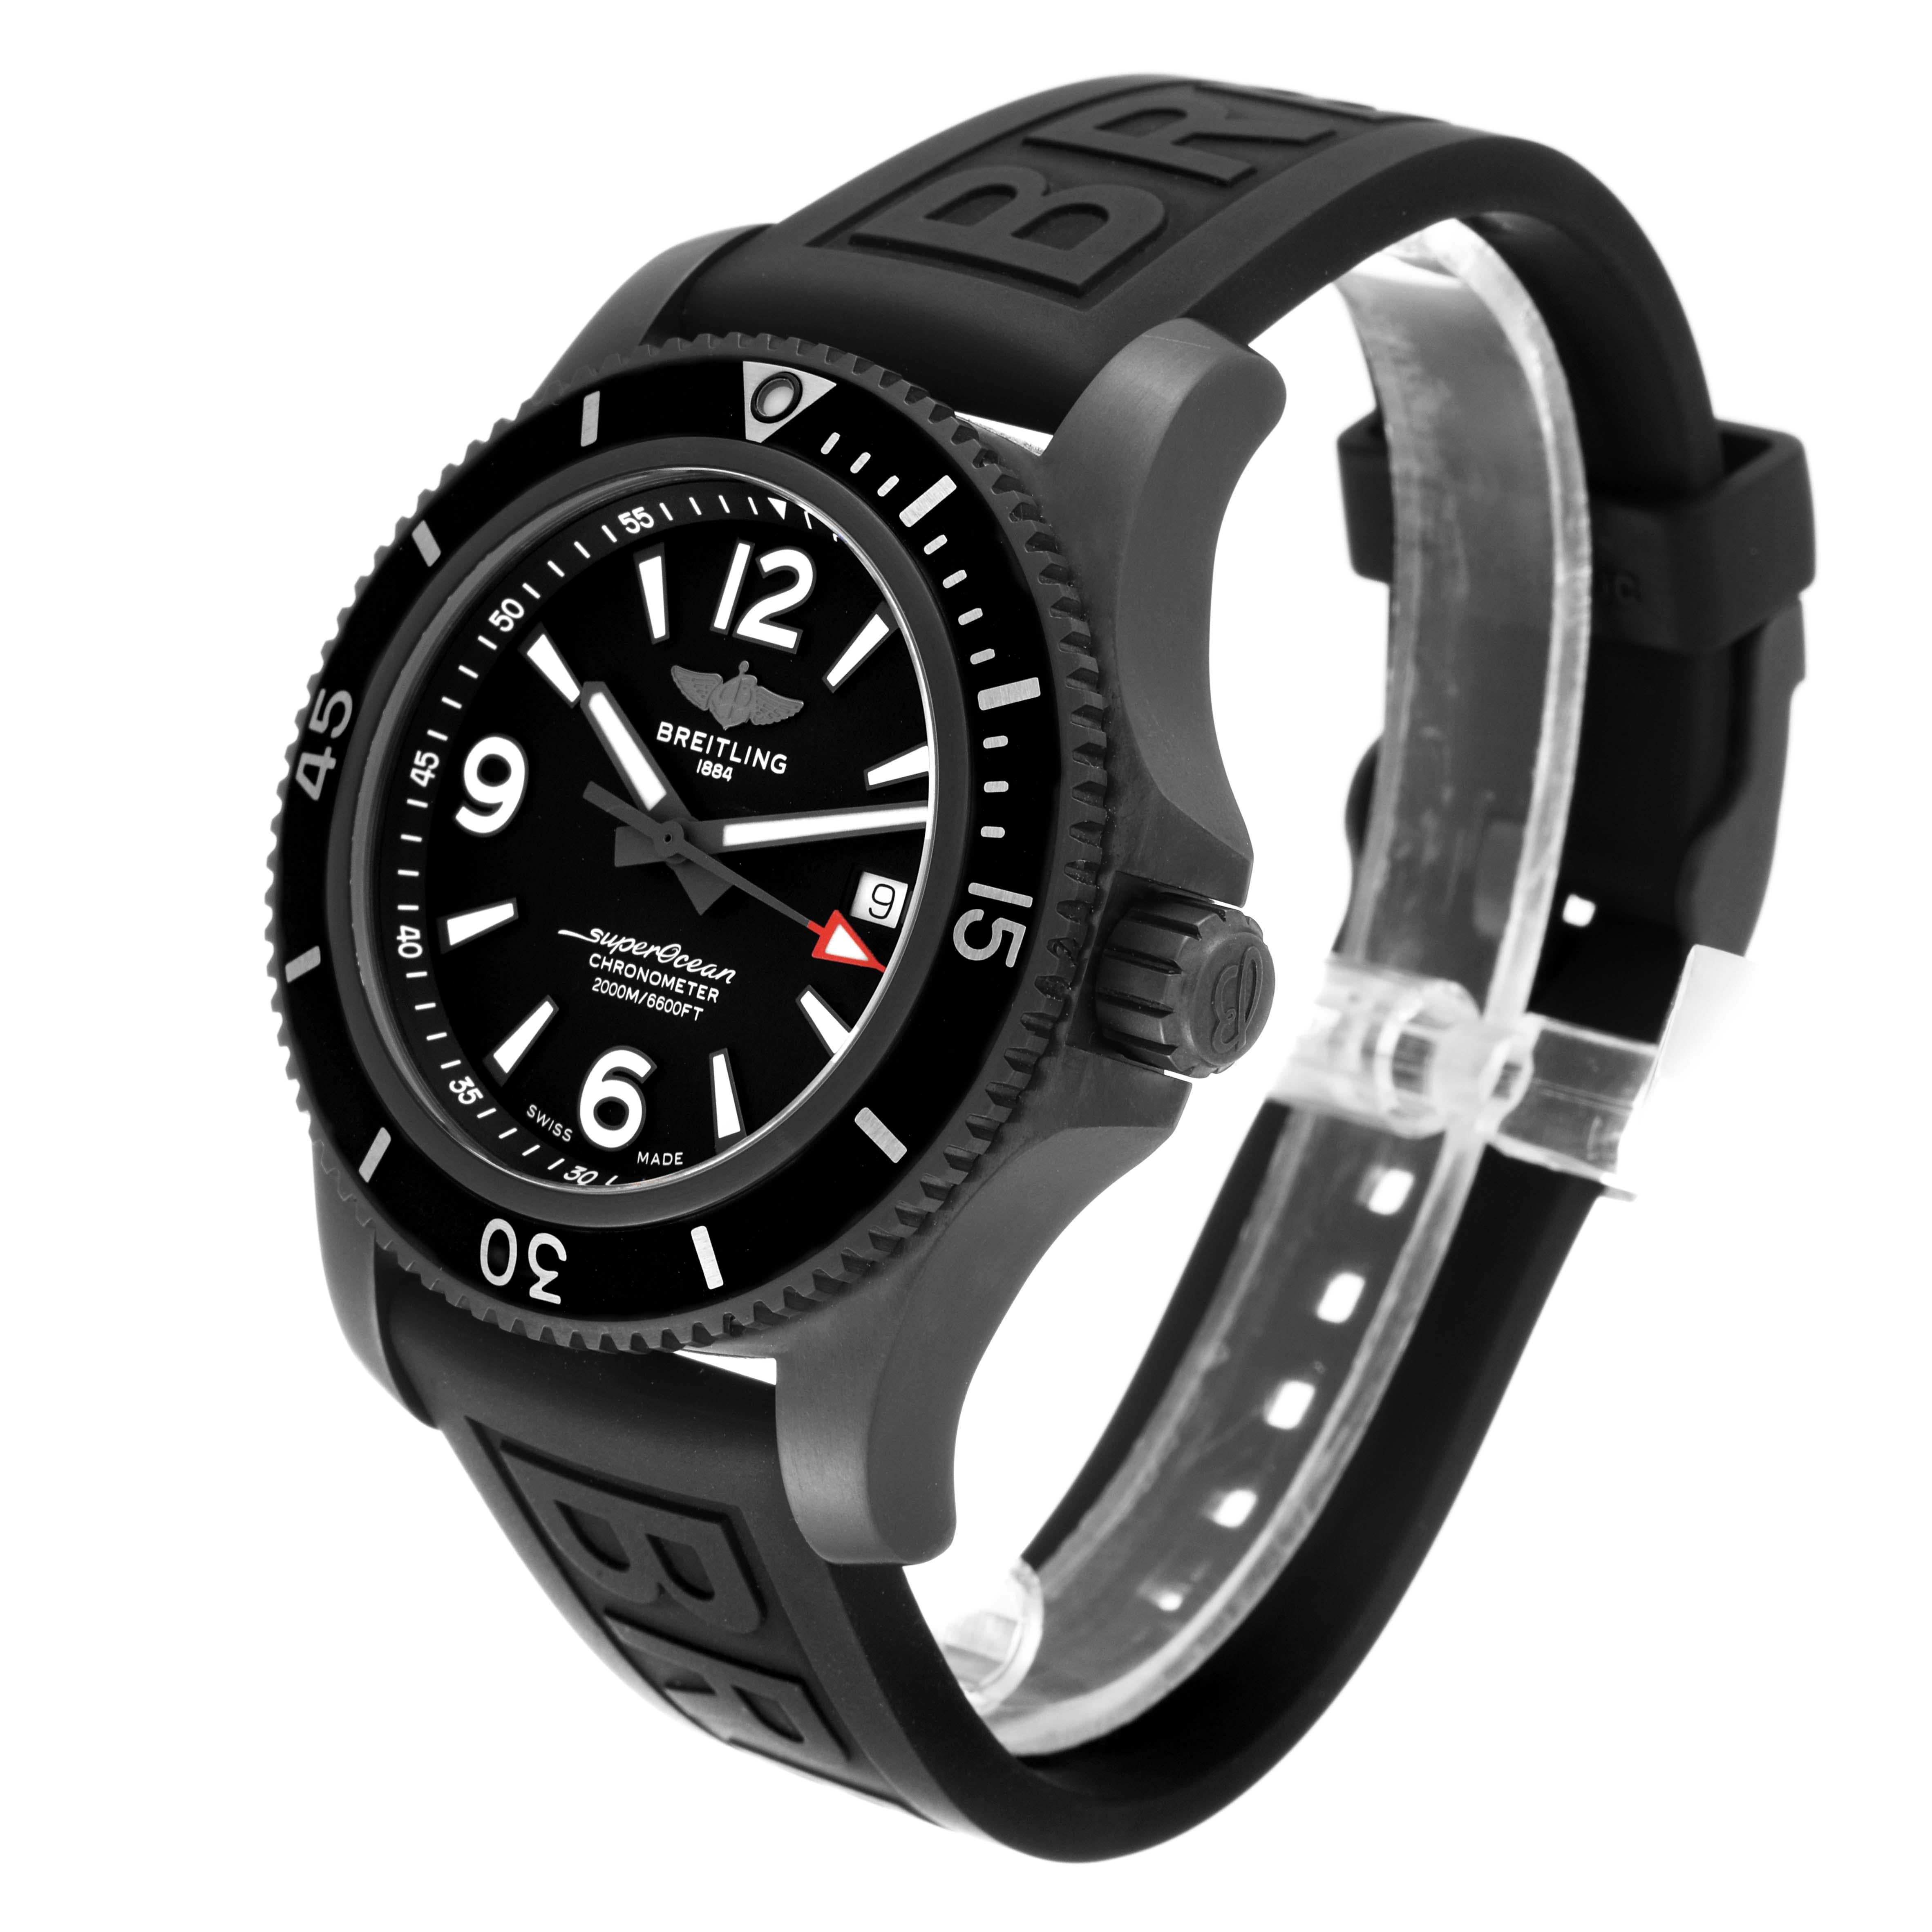 Breitling Superocean 46 Schwarzes Zifferblatt DLC Stahl Herrenuhr M17368 Ungetragen. Automatisches Uhrwerk mit Selbstaufzug. DLC-beschichtetes Edelstahlgehäuse mit einem Durchmesser von 46,0 mm. Verschraubte Krone aus Edelstahl. Schwarze, einseitig